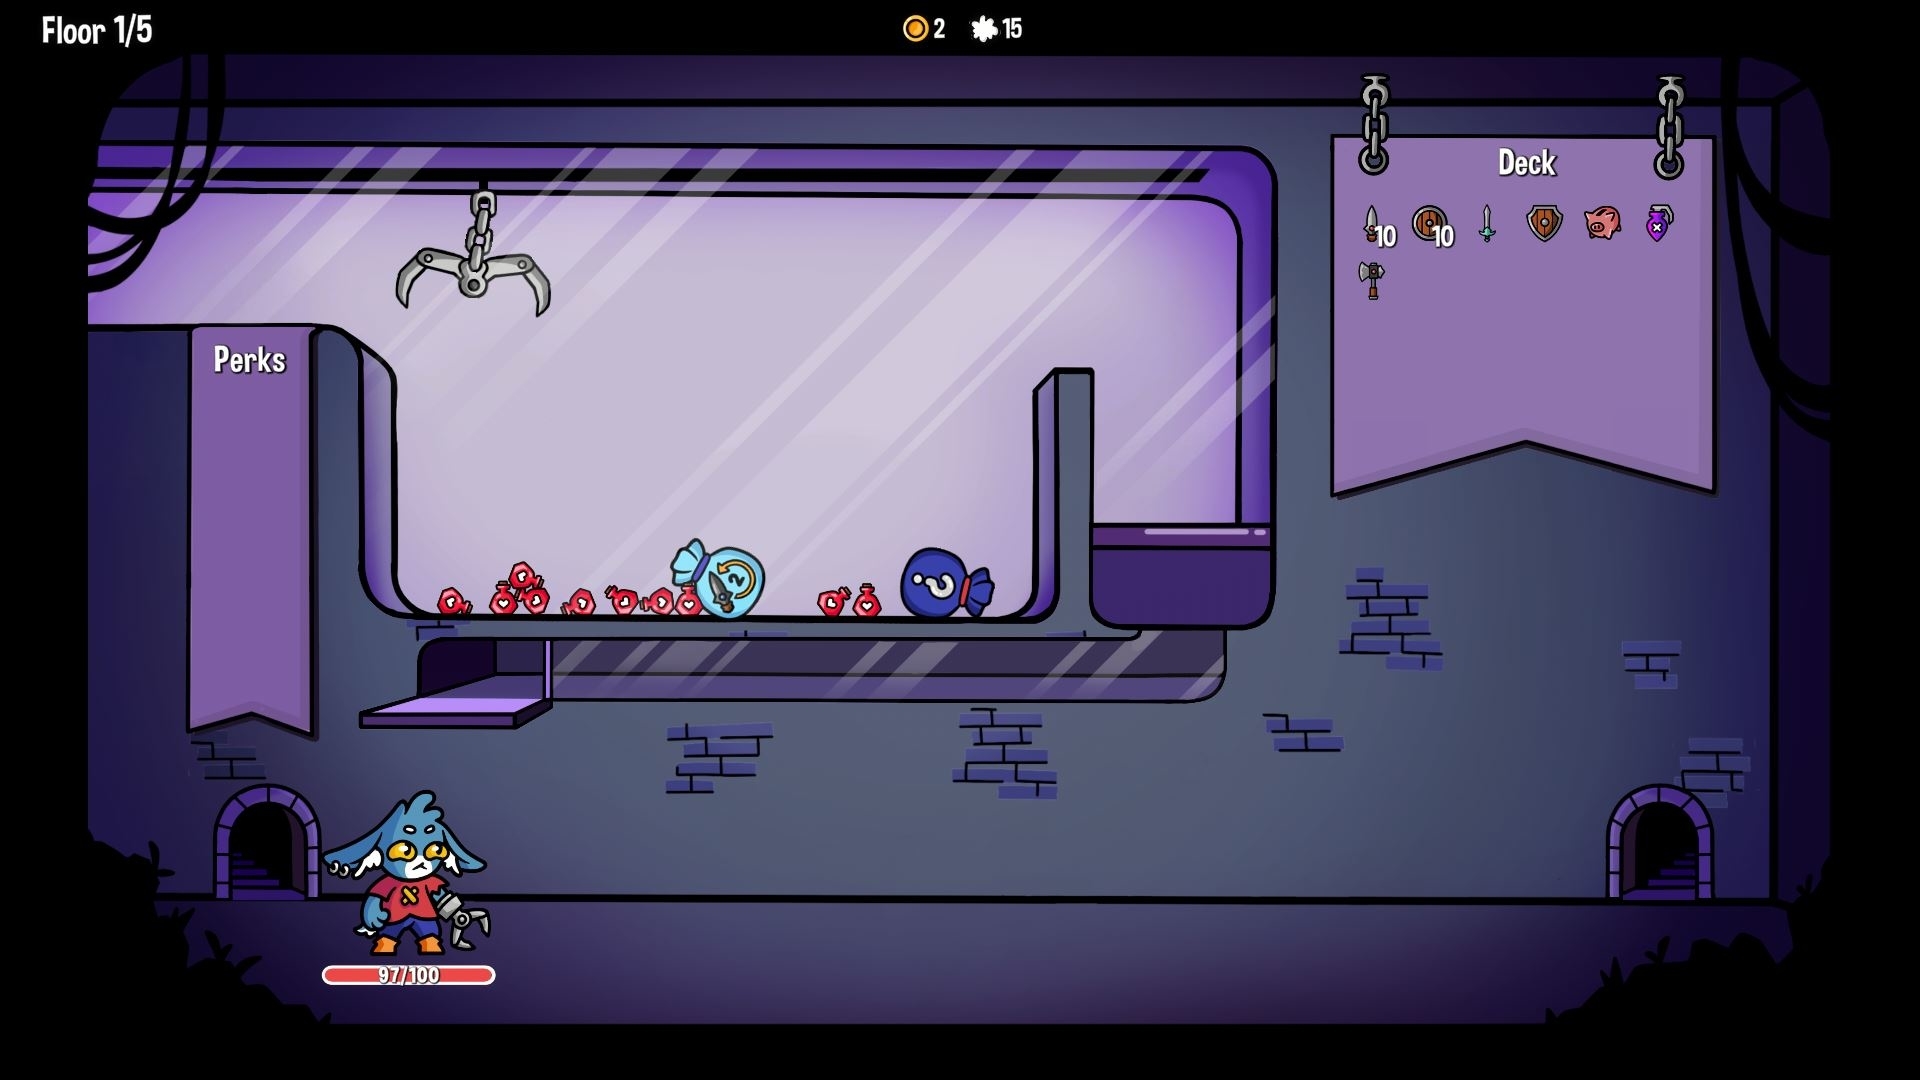 ゲームのスクリーンショットで、キャラクターが部屋に立ち、アイテムが表示されています。